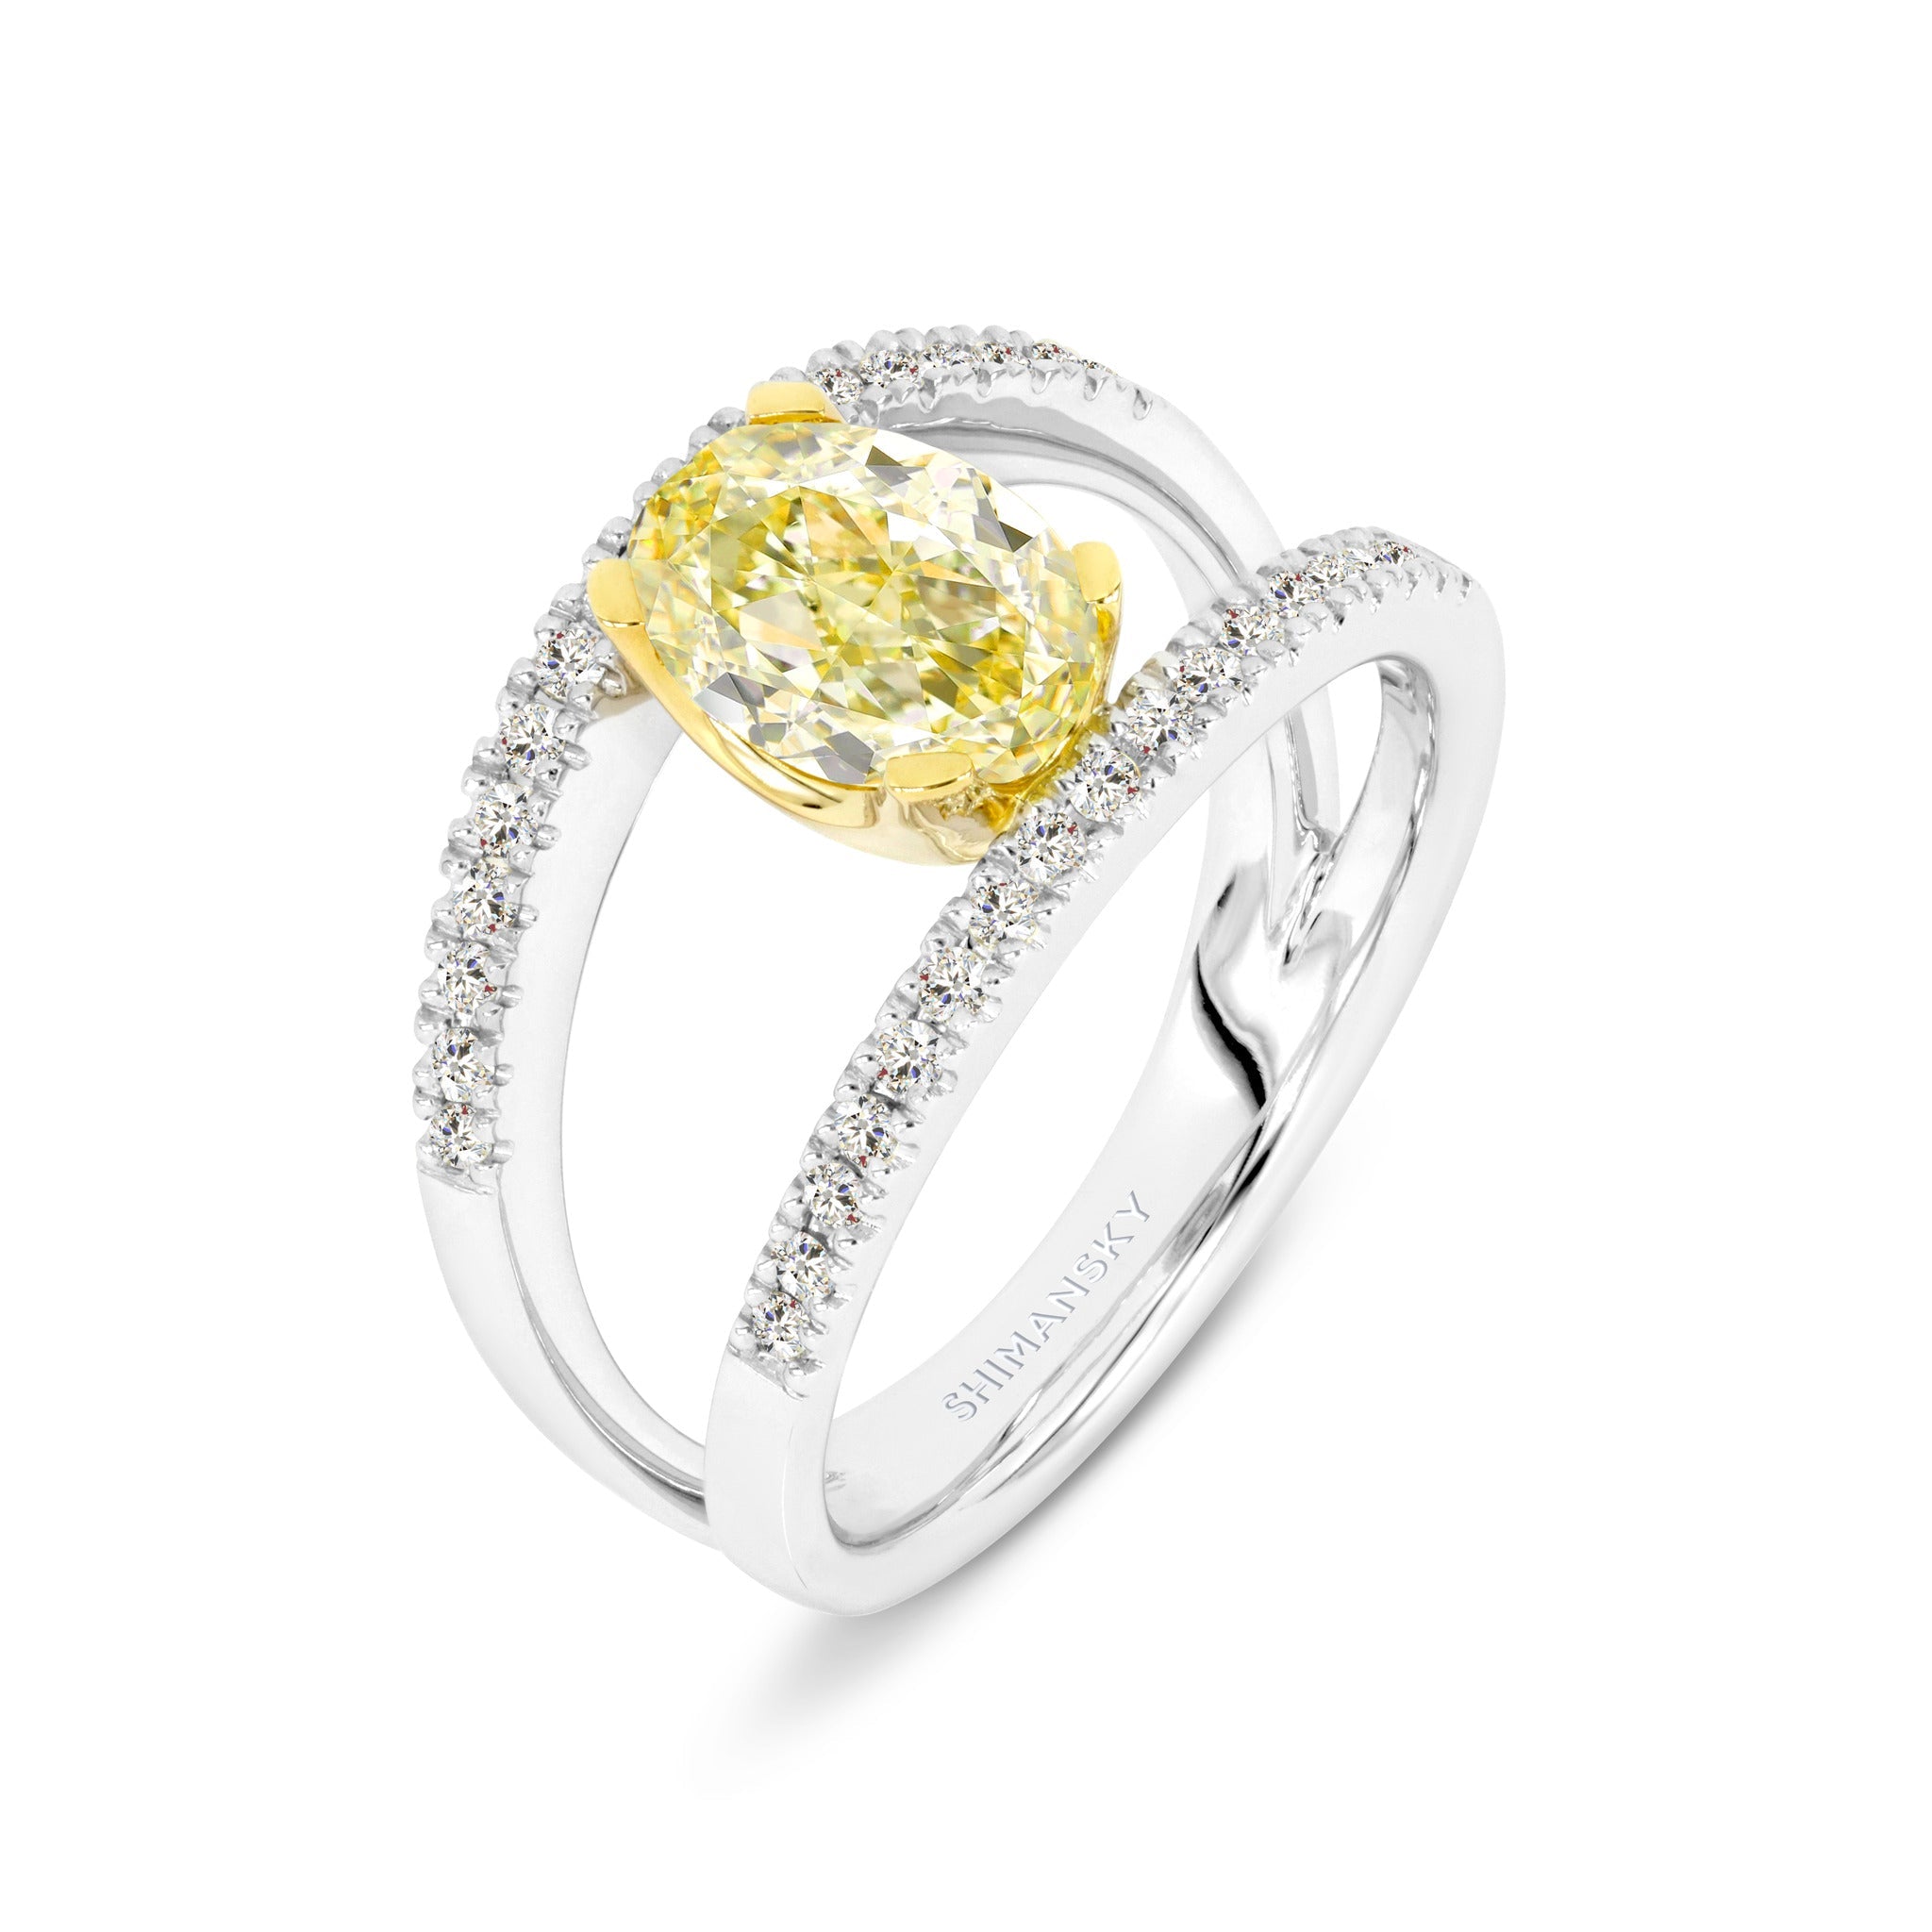 1.6 TCW Millennium Diamond Engagement Ring 3D View - Shimansky